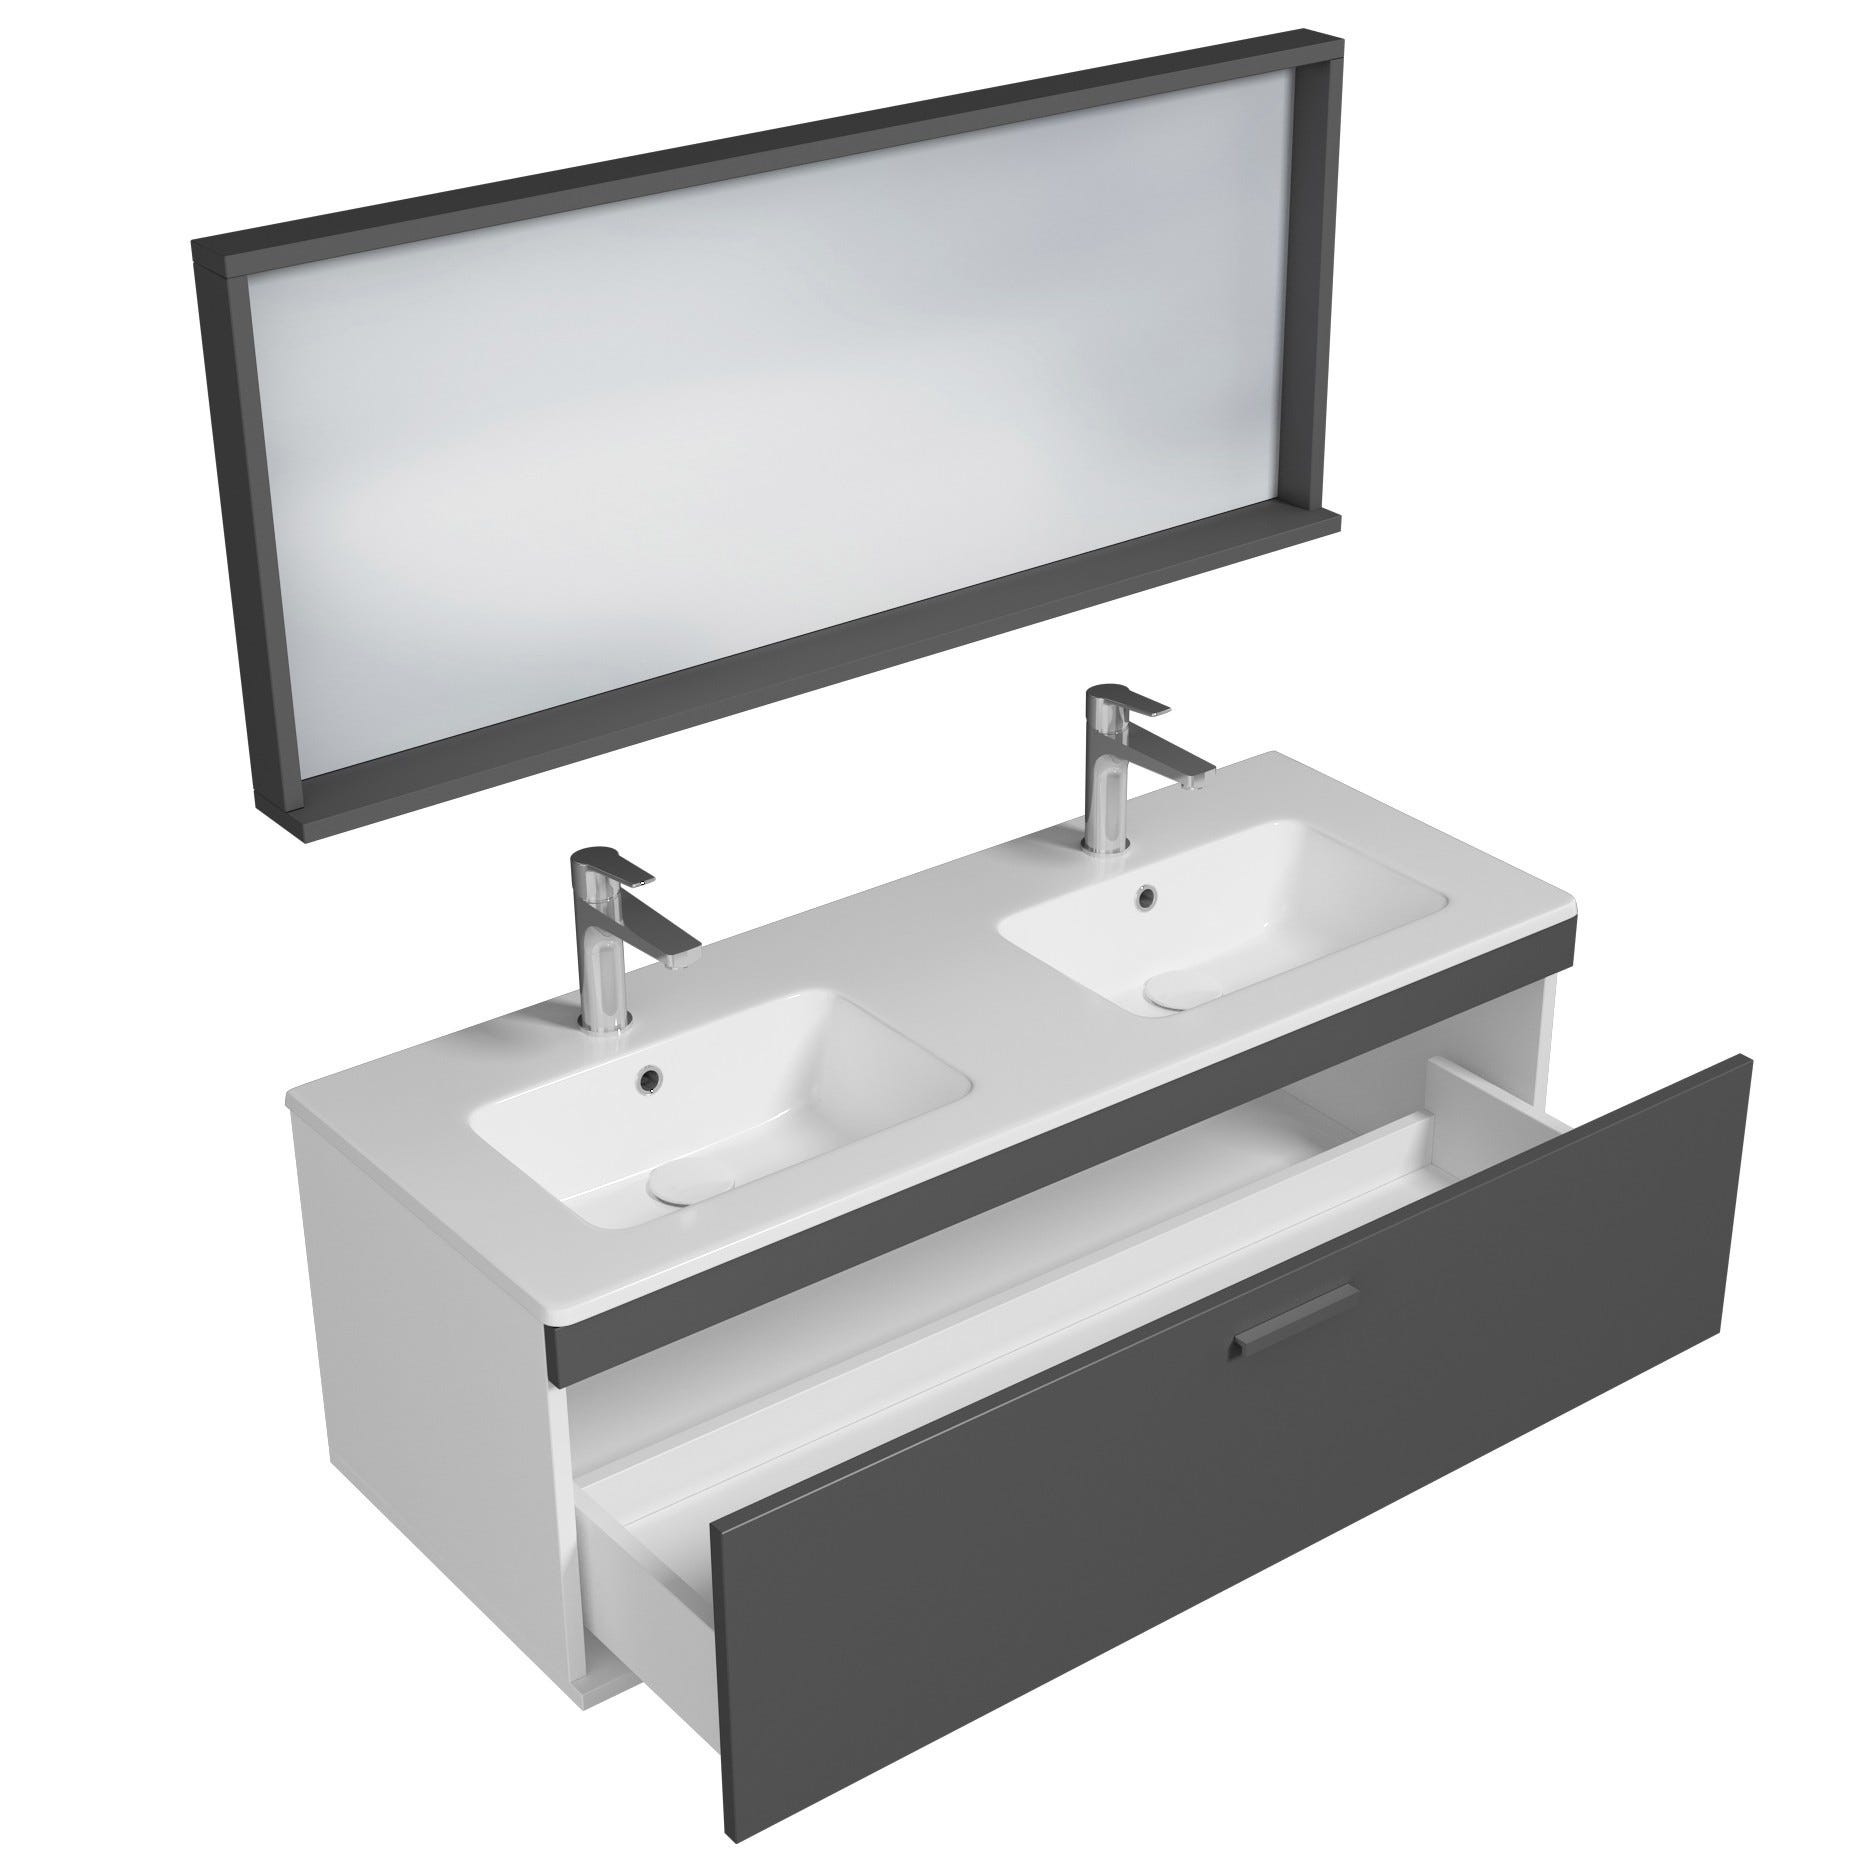 RUBITE Meuble salle de bain double vasque 1 tiroir gris anthracite largeur 120 cm + miroir cadre 1